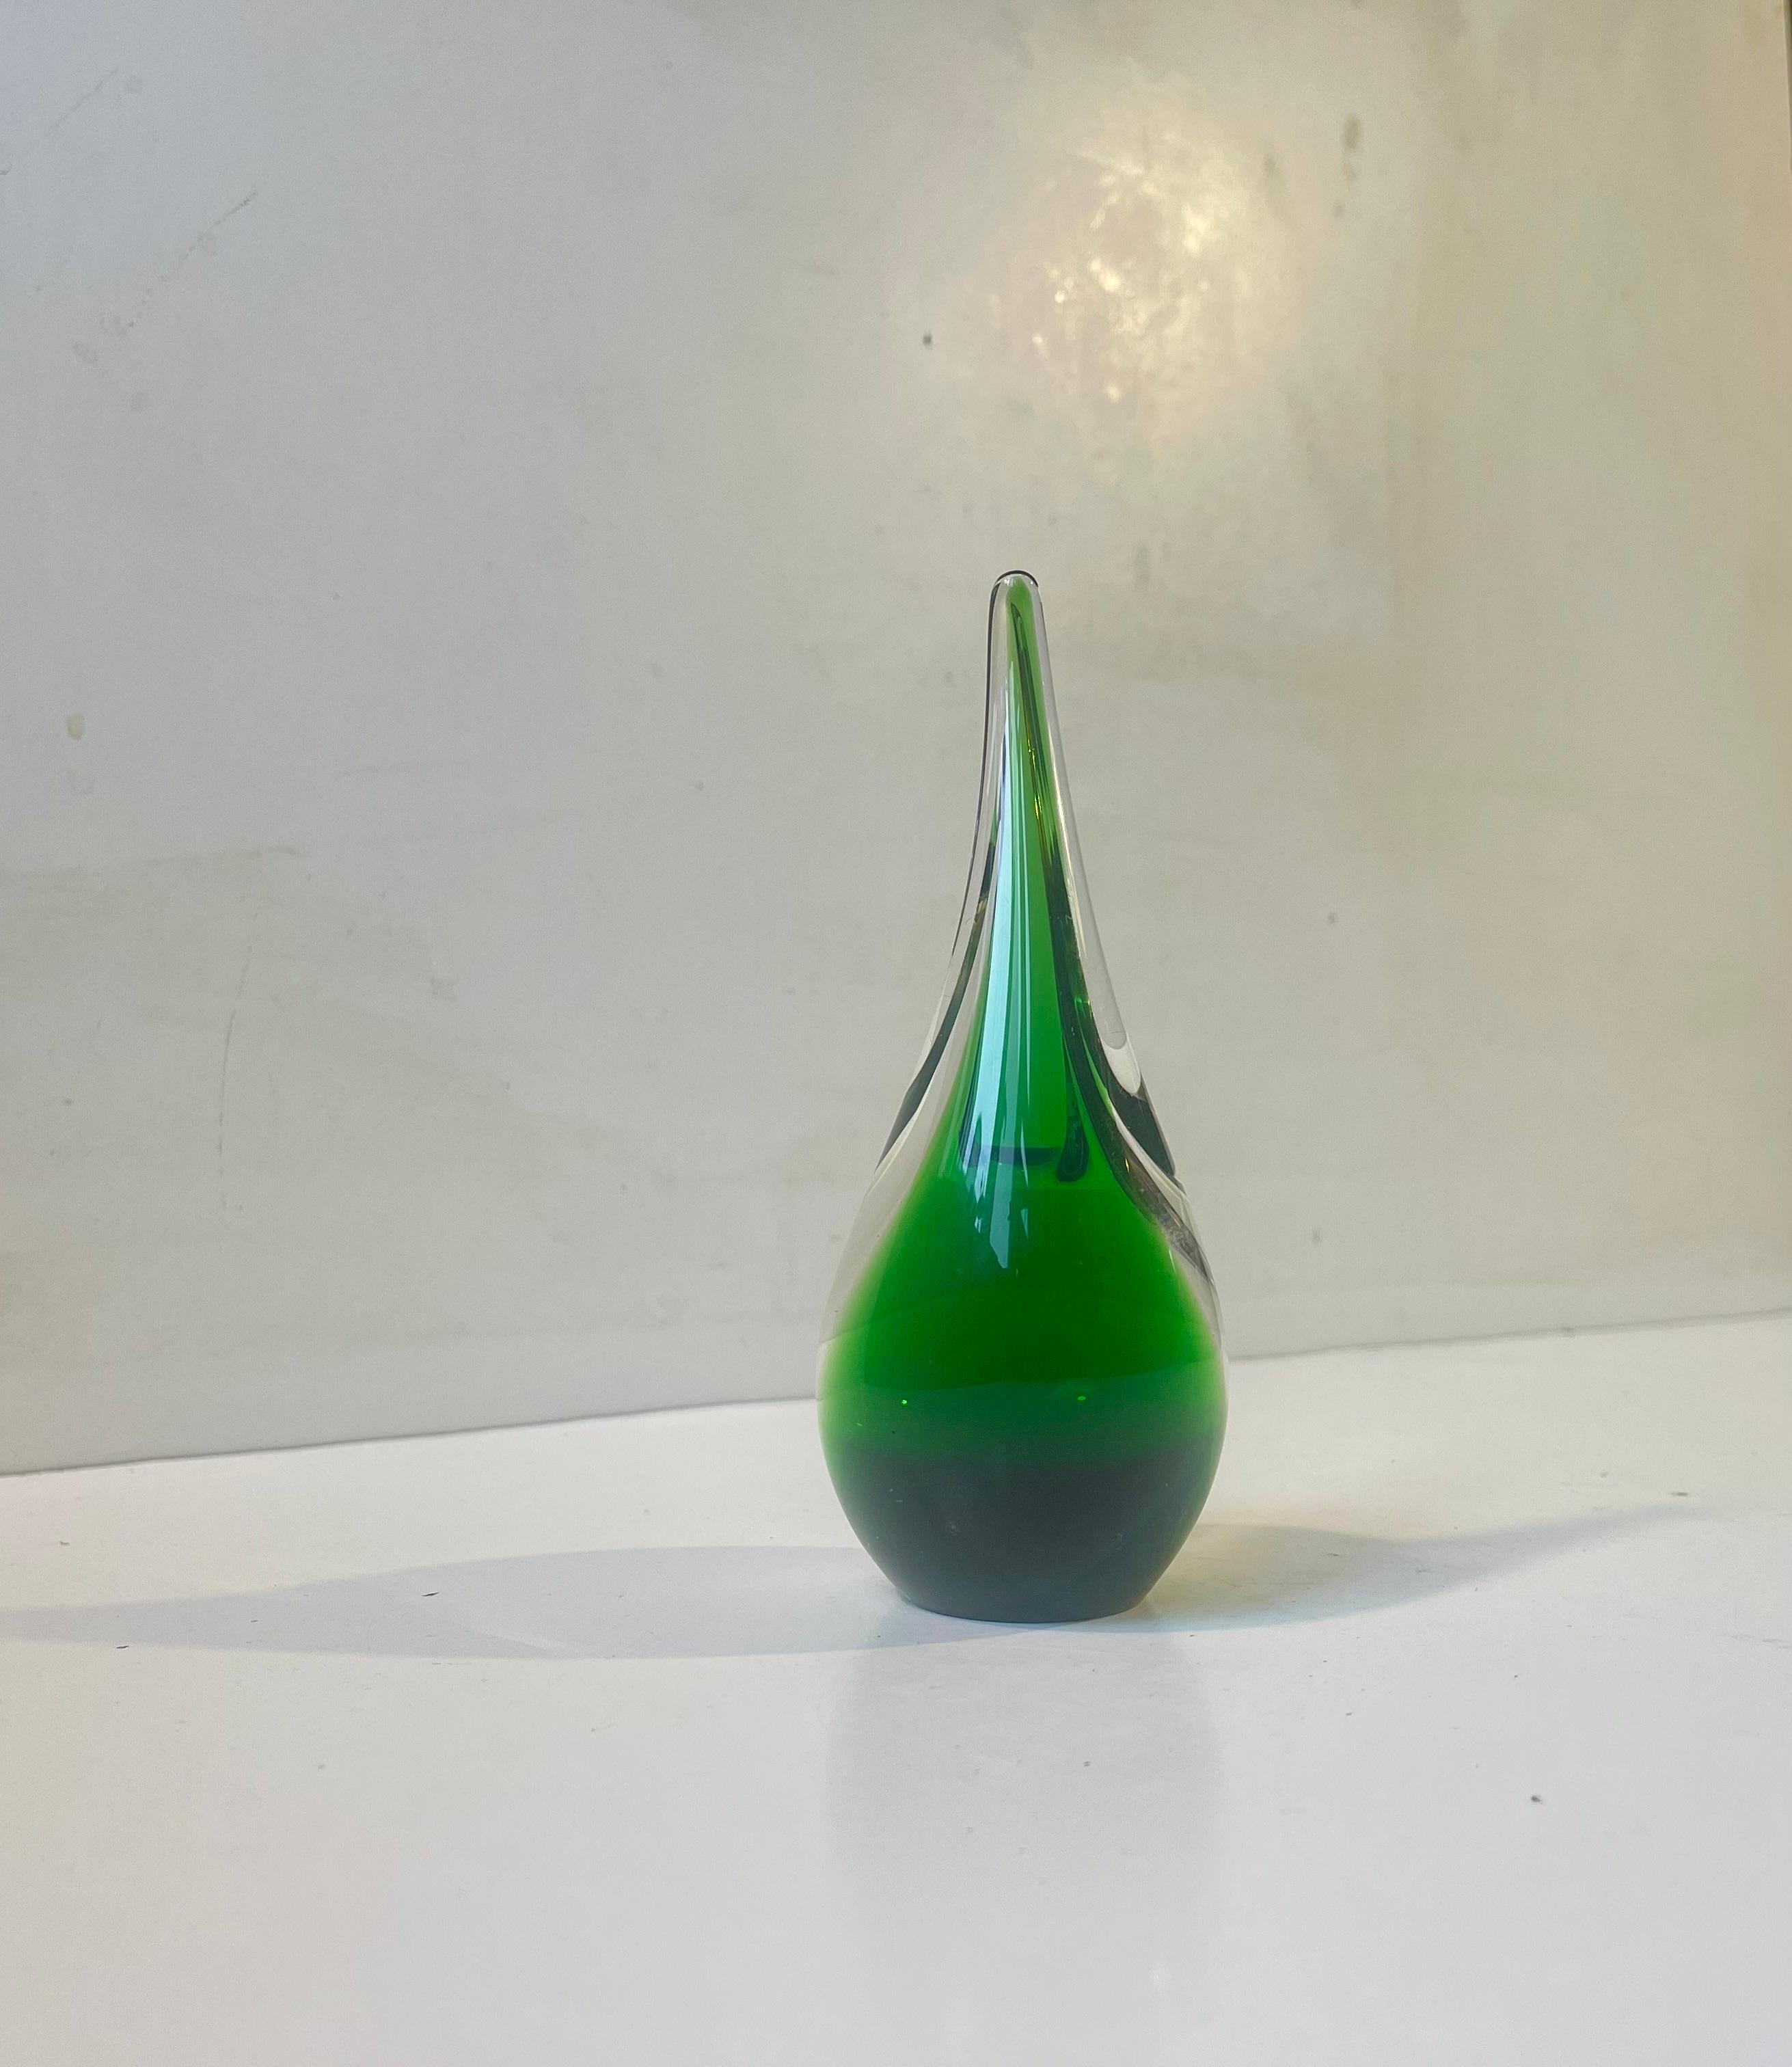 Vase unique en verre d'art conçu et fabriqué par Per Lütken à Holmegaard au Danemark en 1957. Exécuté en verre Sommerso soufflé à la main, vert et propre. Signé à la main sur sa base Holmegaard, 1957, PLS (Per Lütken). Dimensions : H : 14,5 cm, L/D